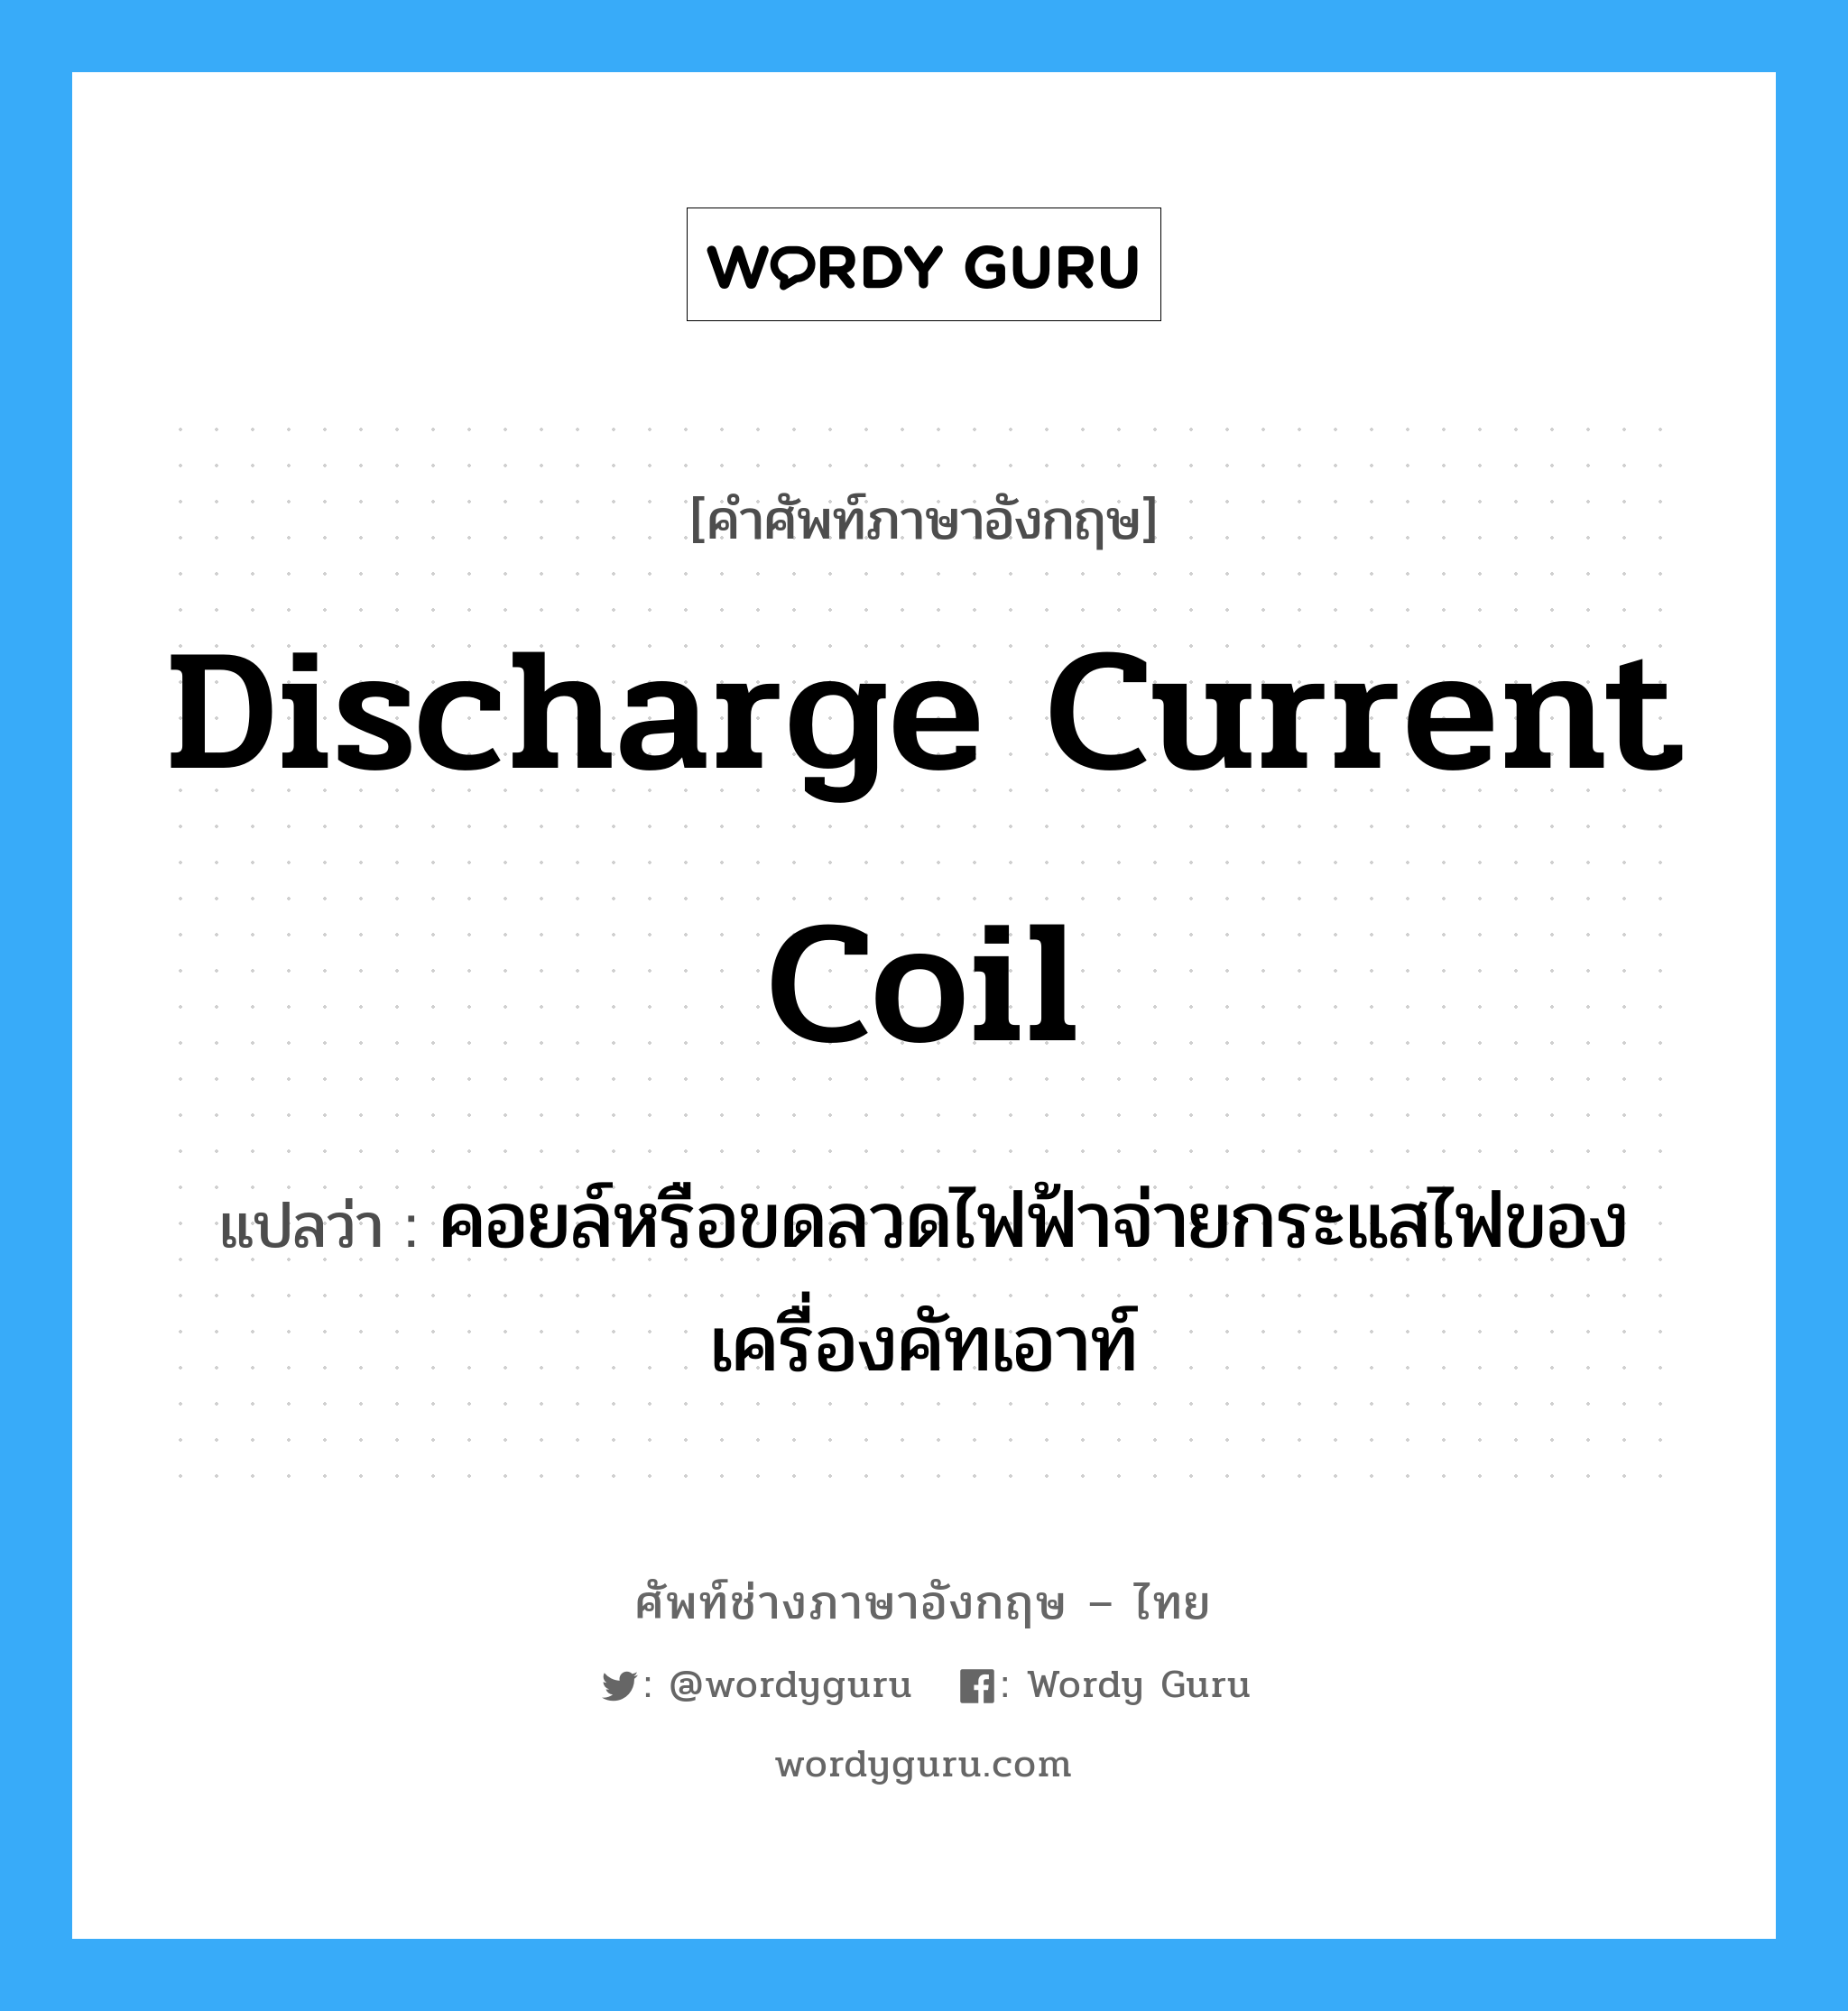 discharge current coil แปลว่า?, คำศัพท์ช่างภาษาอังกฤษ - ไทย discharge current coil คำศัพท์ภาษาอังกฤษ discharge current coil แปลว่า คอยล์หรือขดลวดไฟฟ้าจ่ายกระแสไฟของเครื่องคัทเอาท์